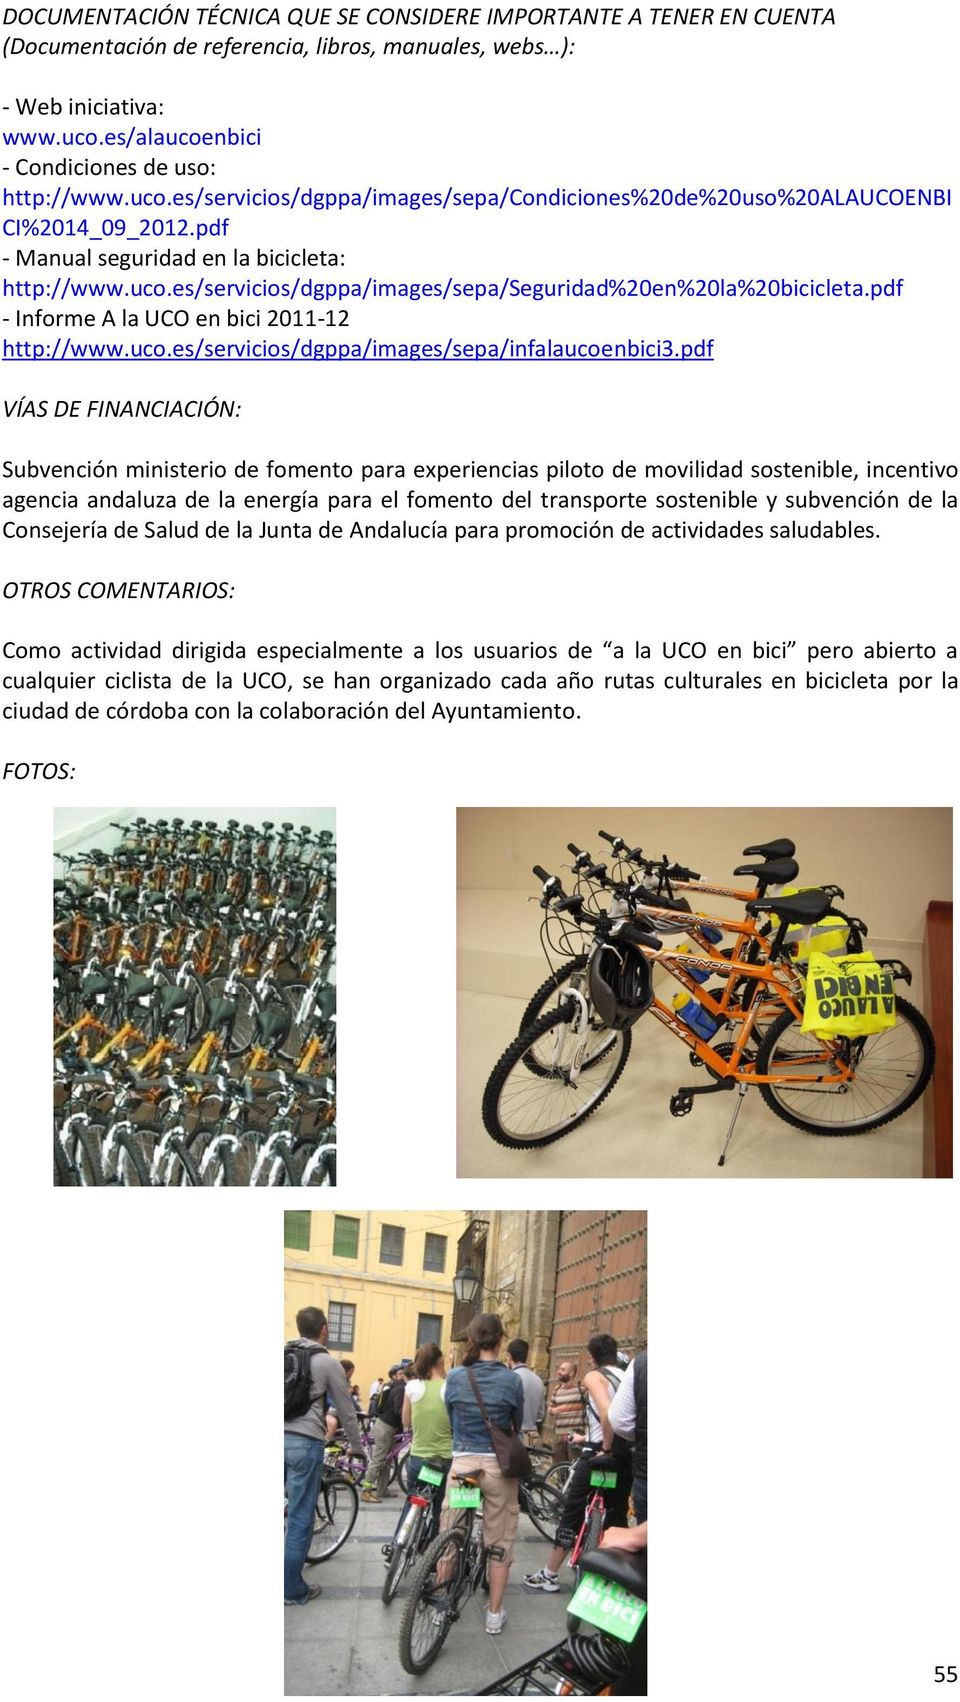 pdf - Informe A la UCO en bici 2011-12 http://www.uco.es/servicios/dgppa/images/sepa/infalaucoenbici3.